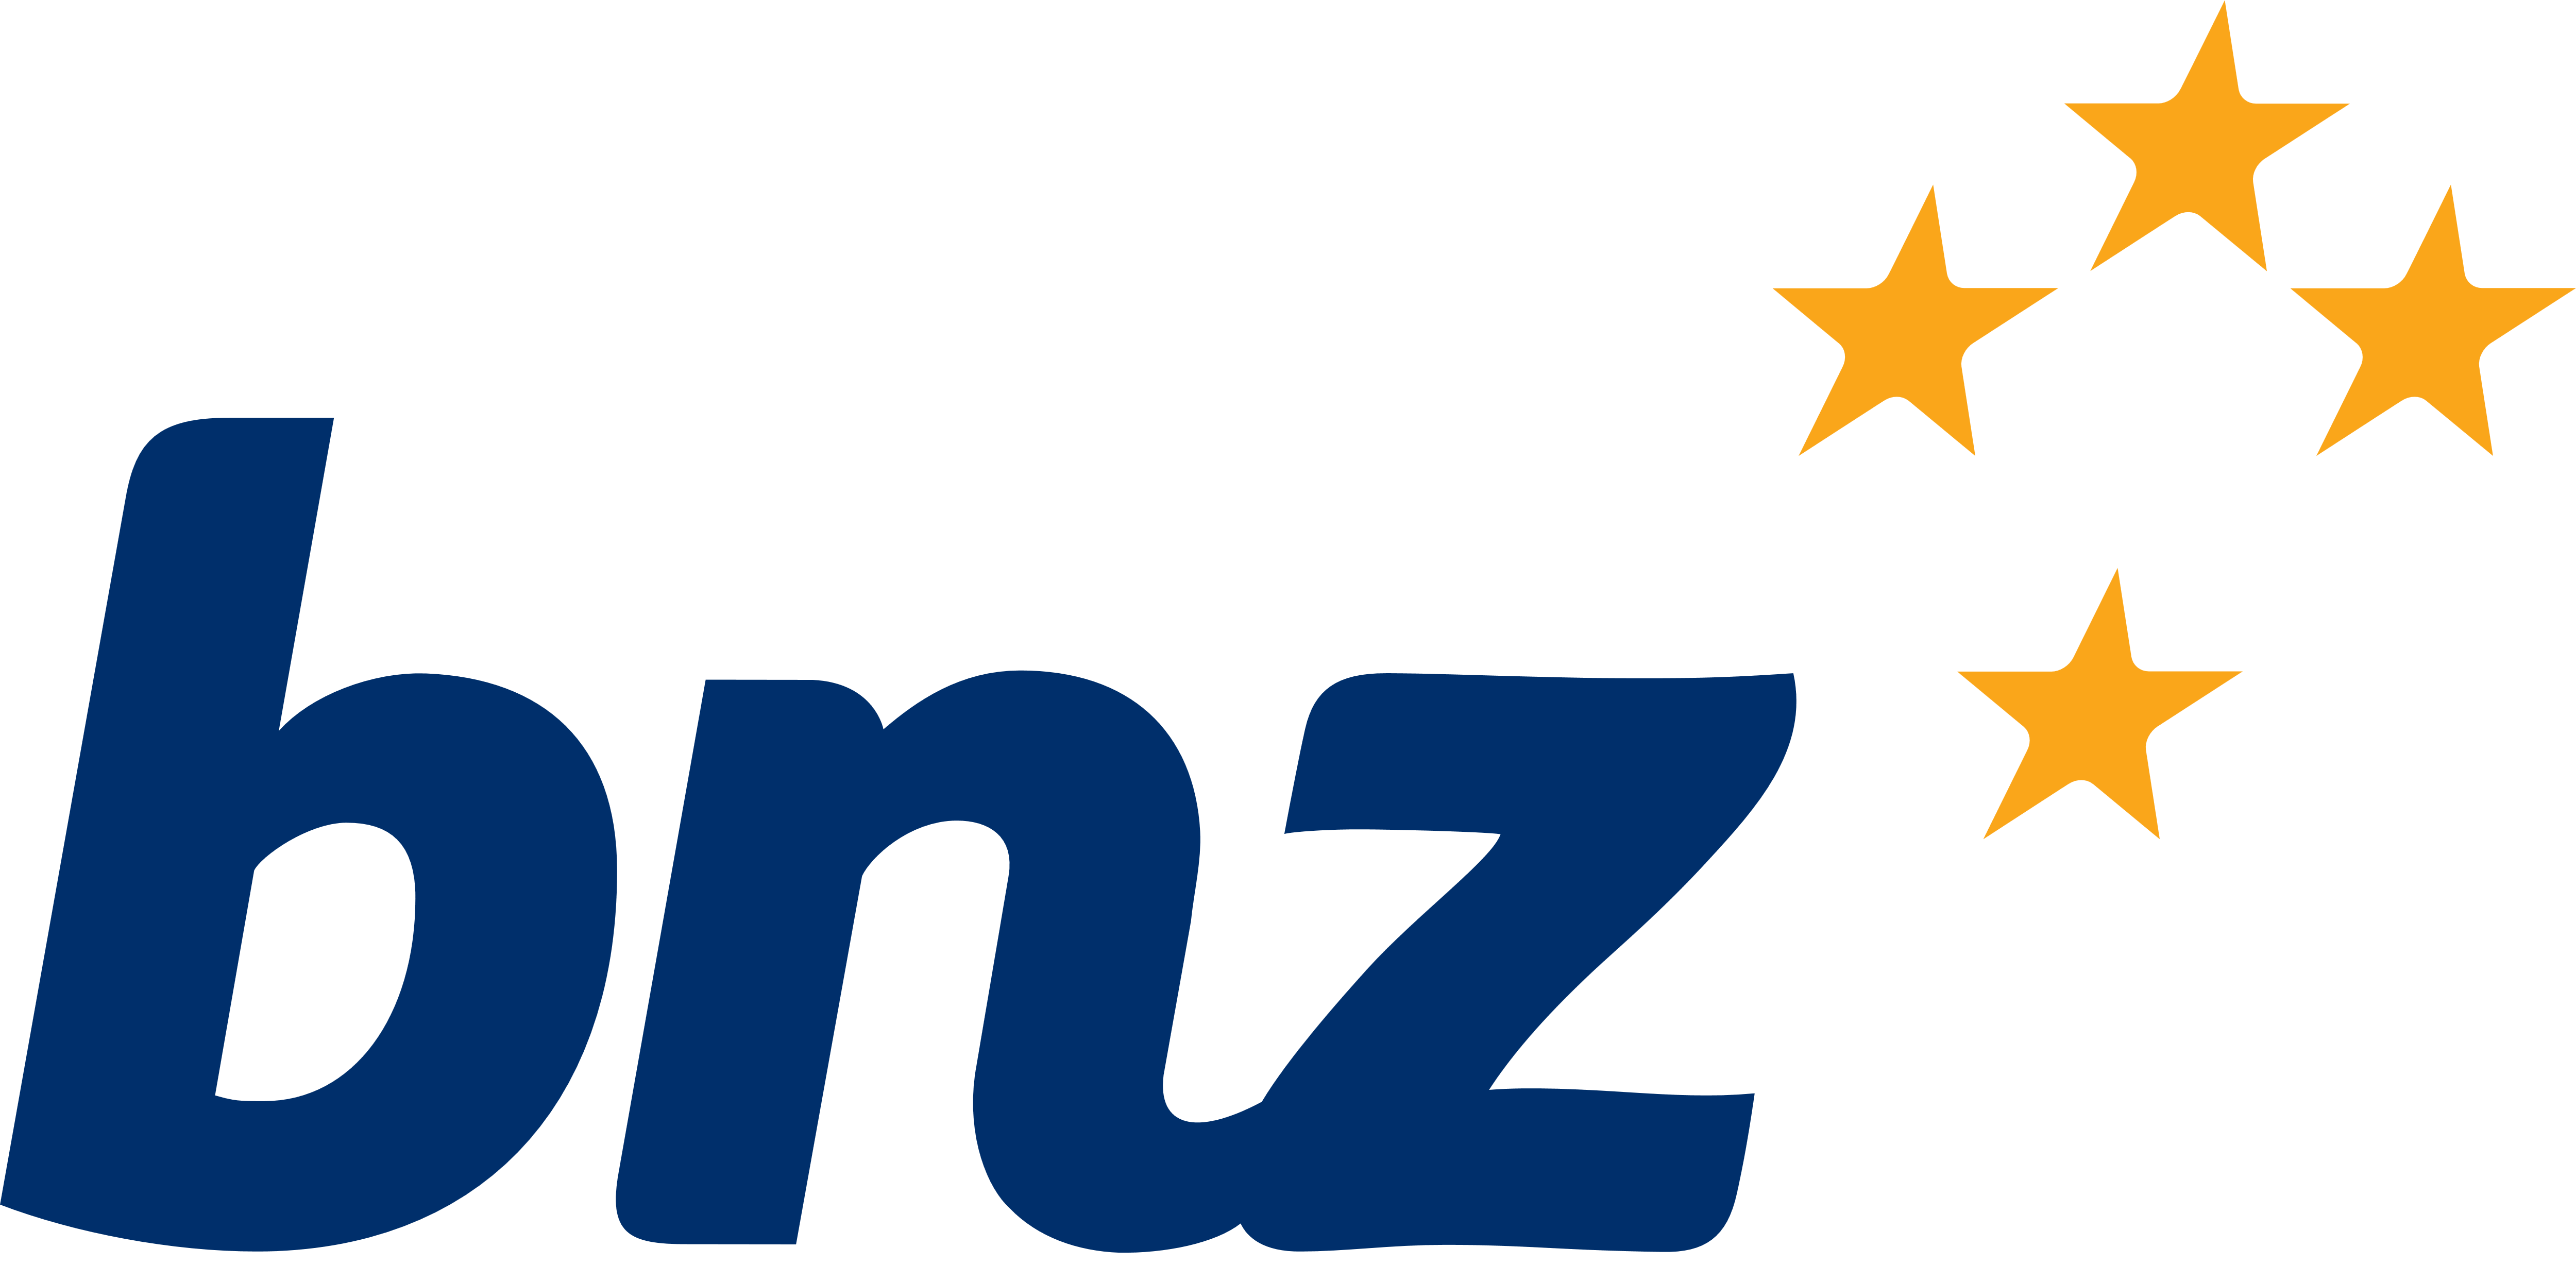 BNZ Bank